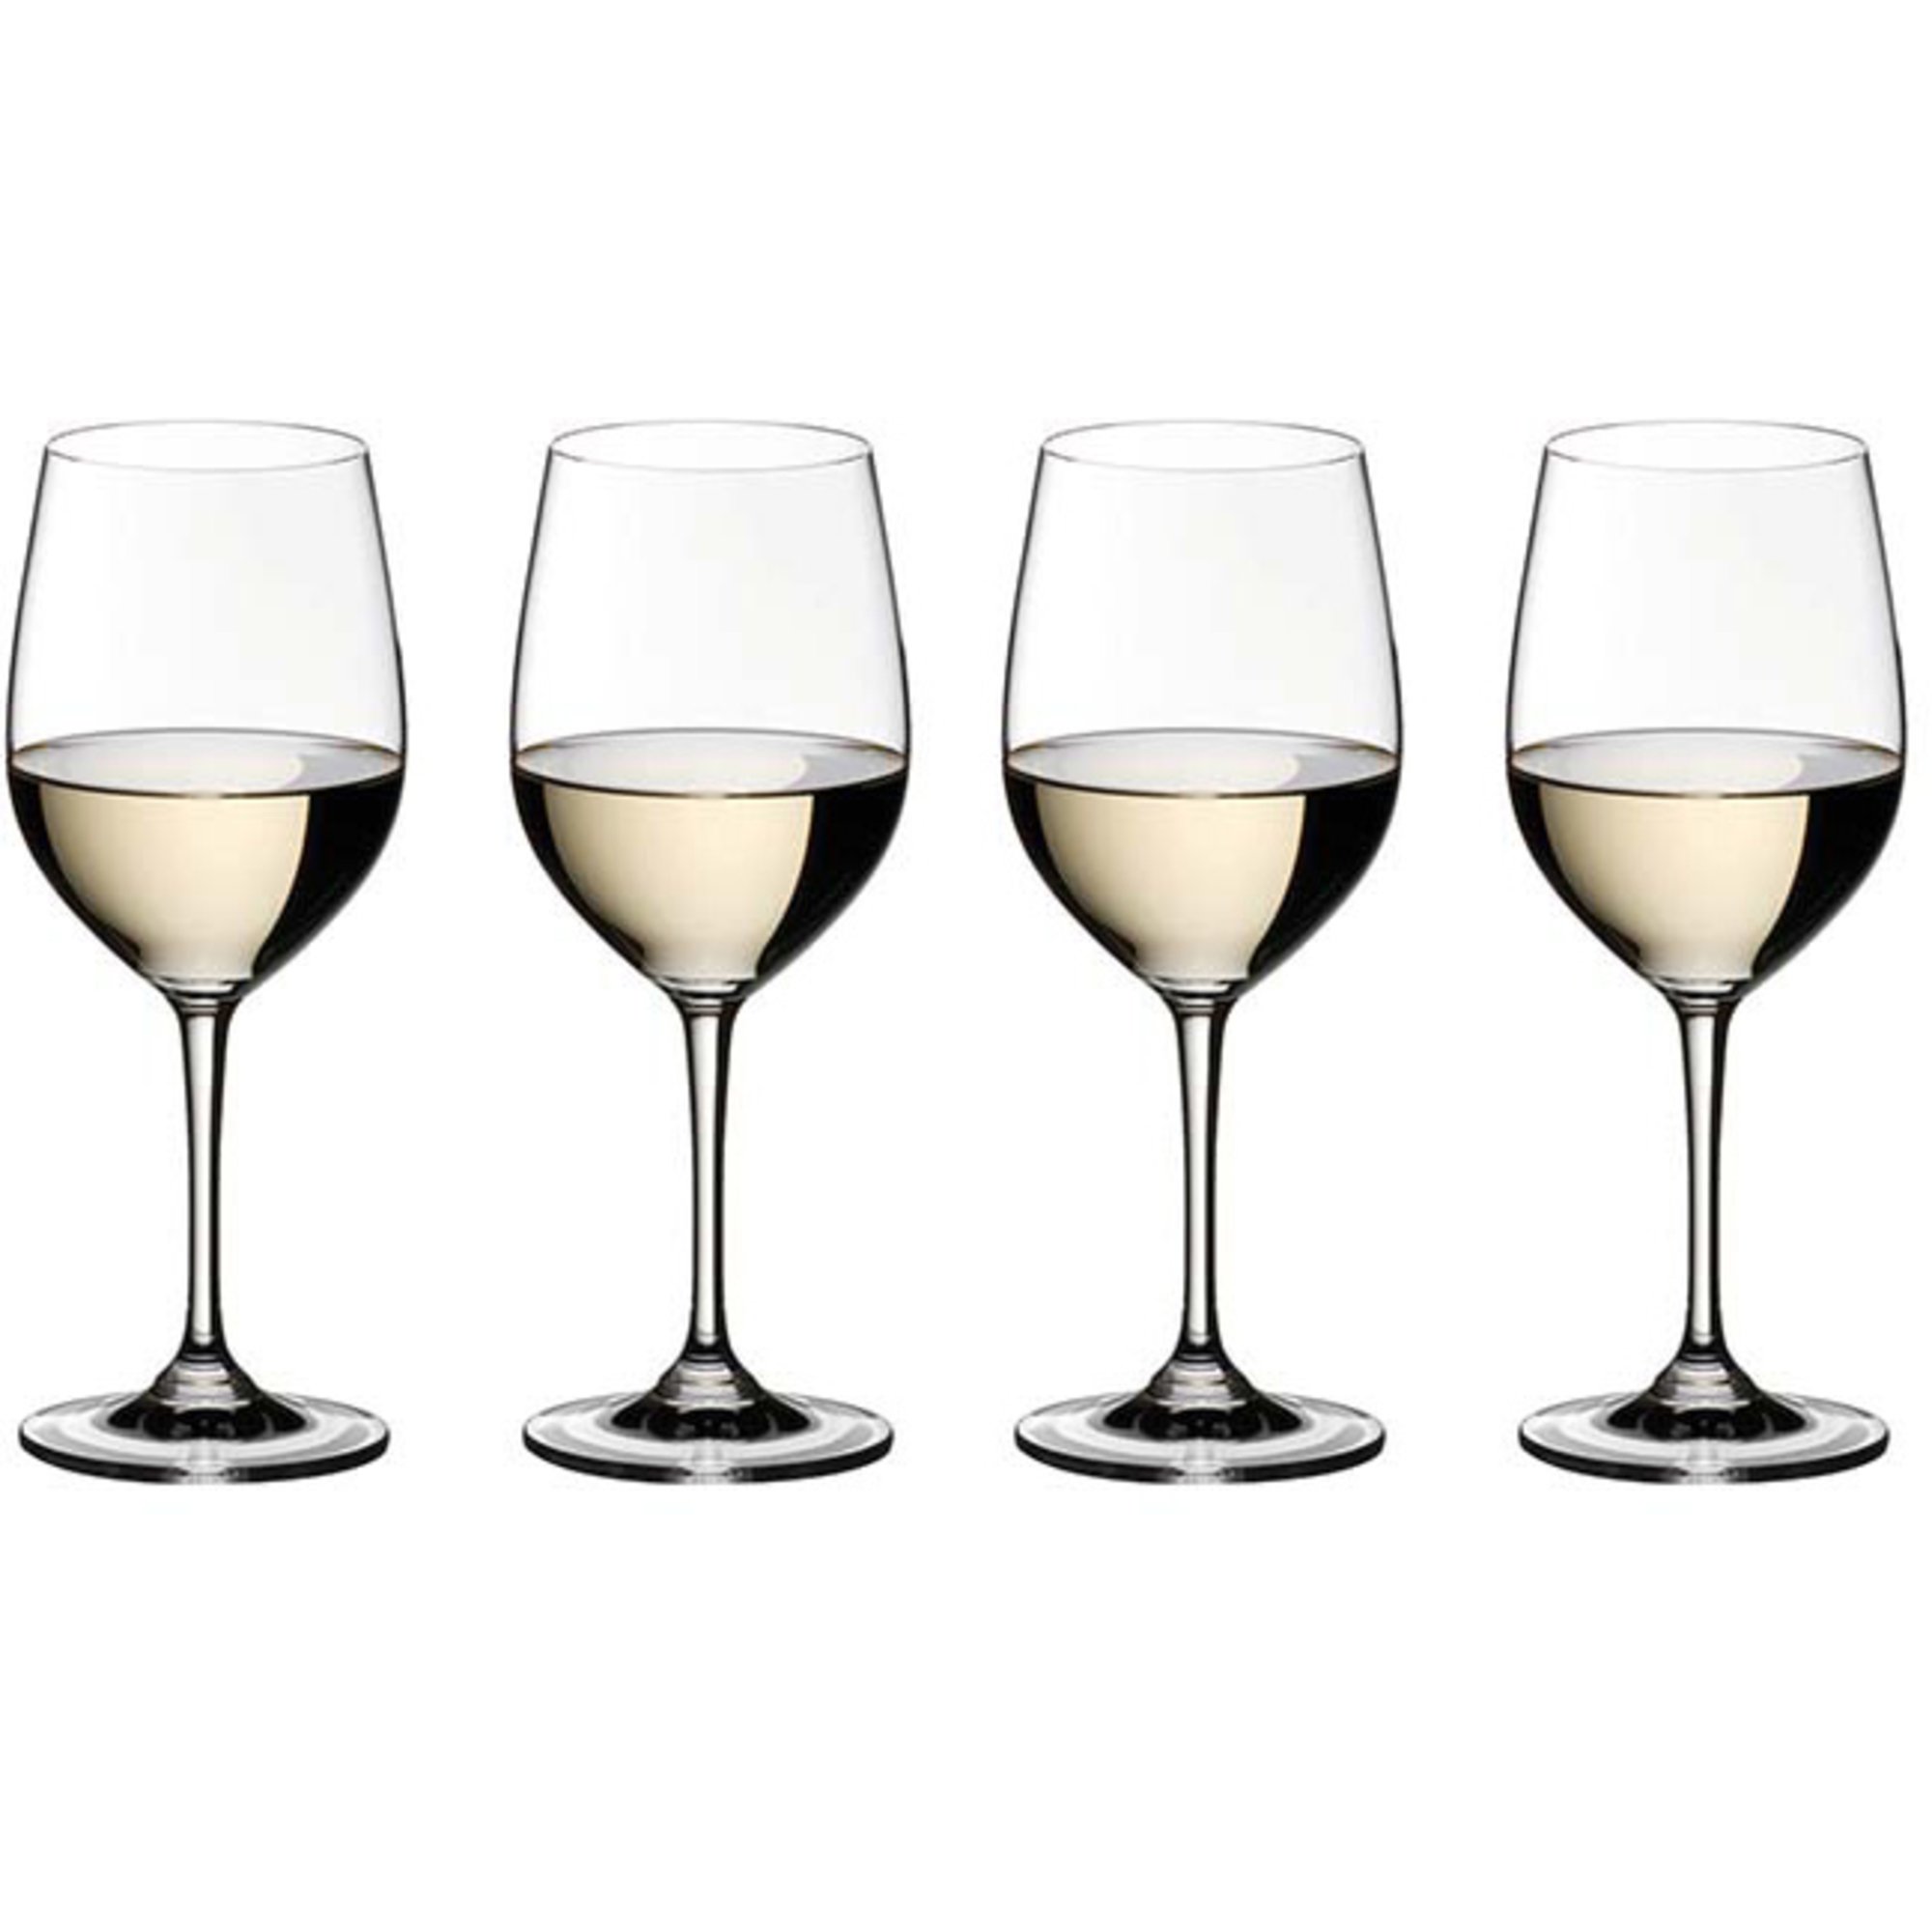 Riedel Vinum viognier/chardonnay vinglas 4-pack